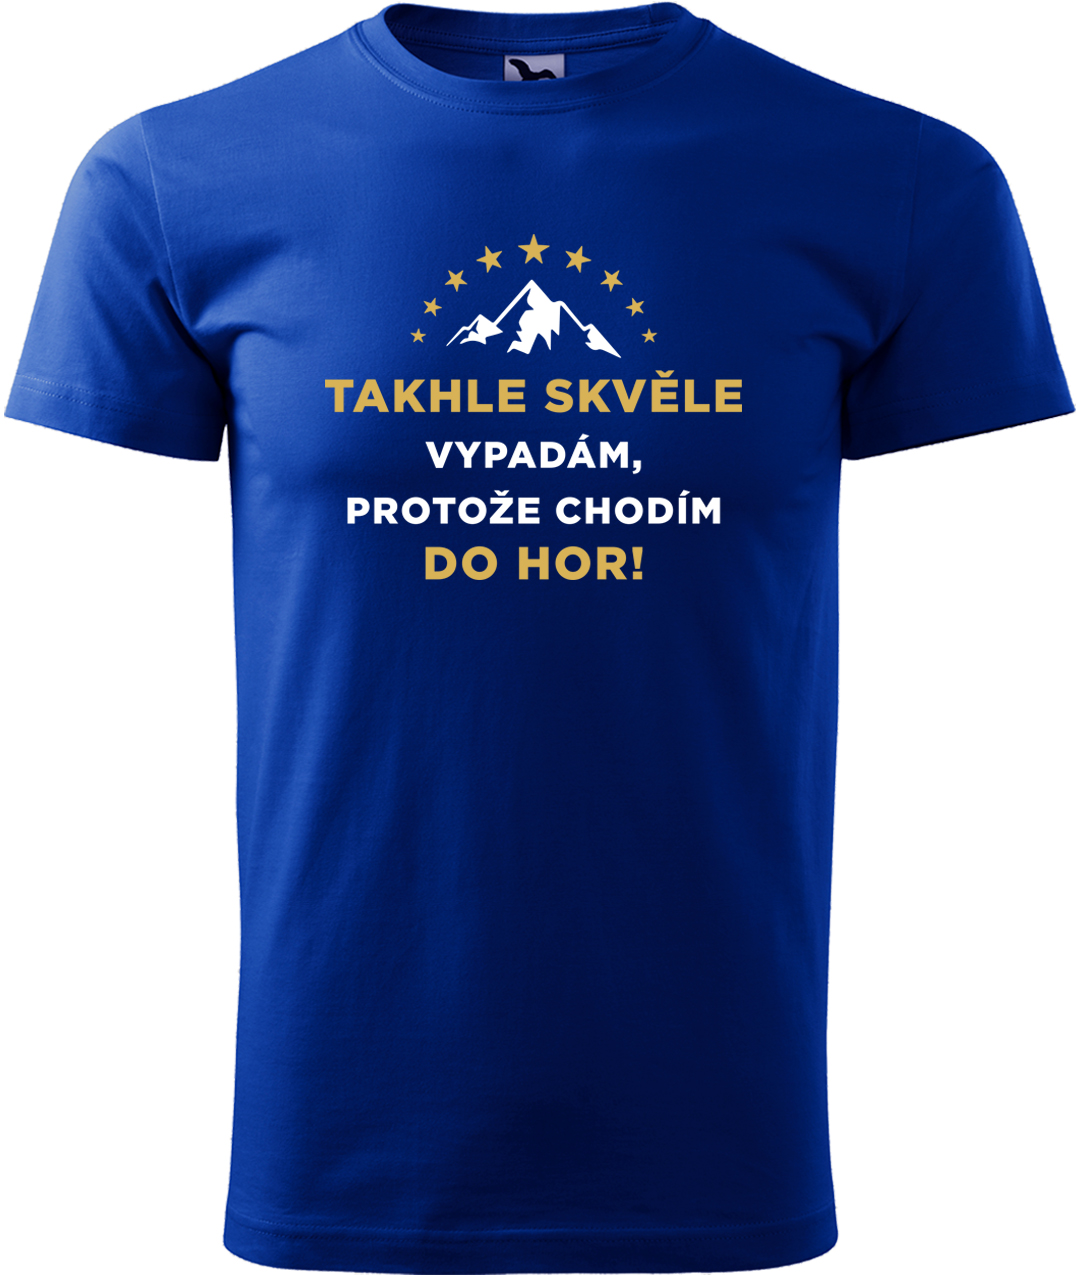 Pánské tričko na hory - Takhle skvěle vypadám, protože chodím do hor Velikost: S, Barva: Královská modrá (05), Střih: pánský